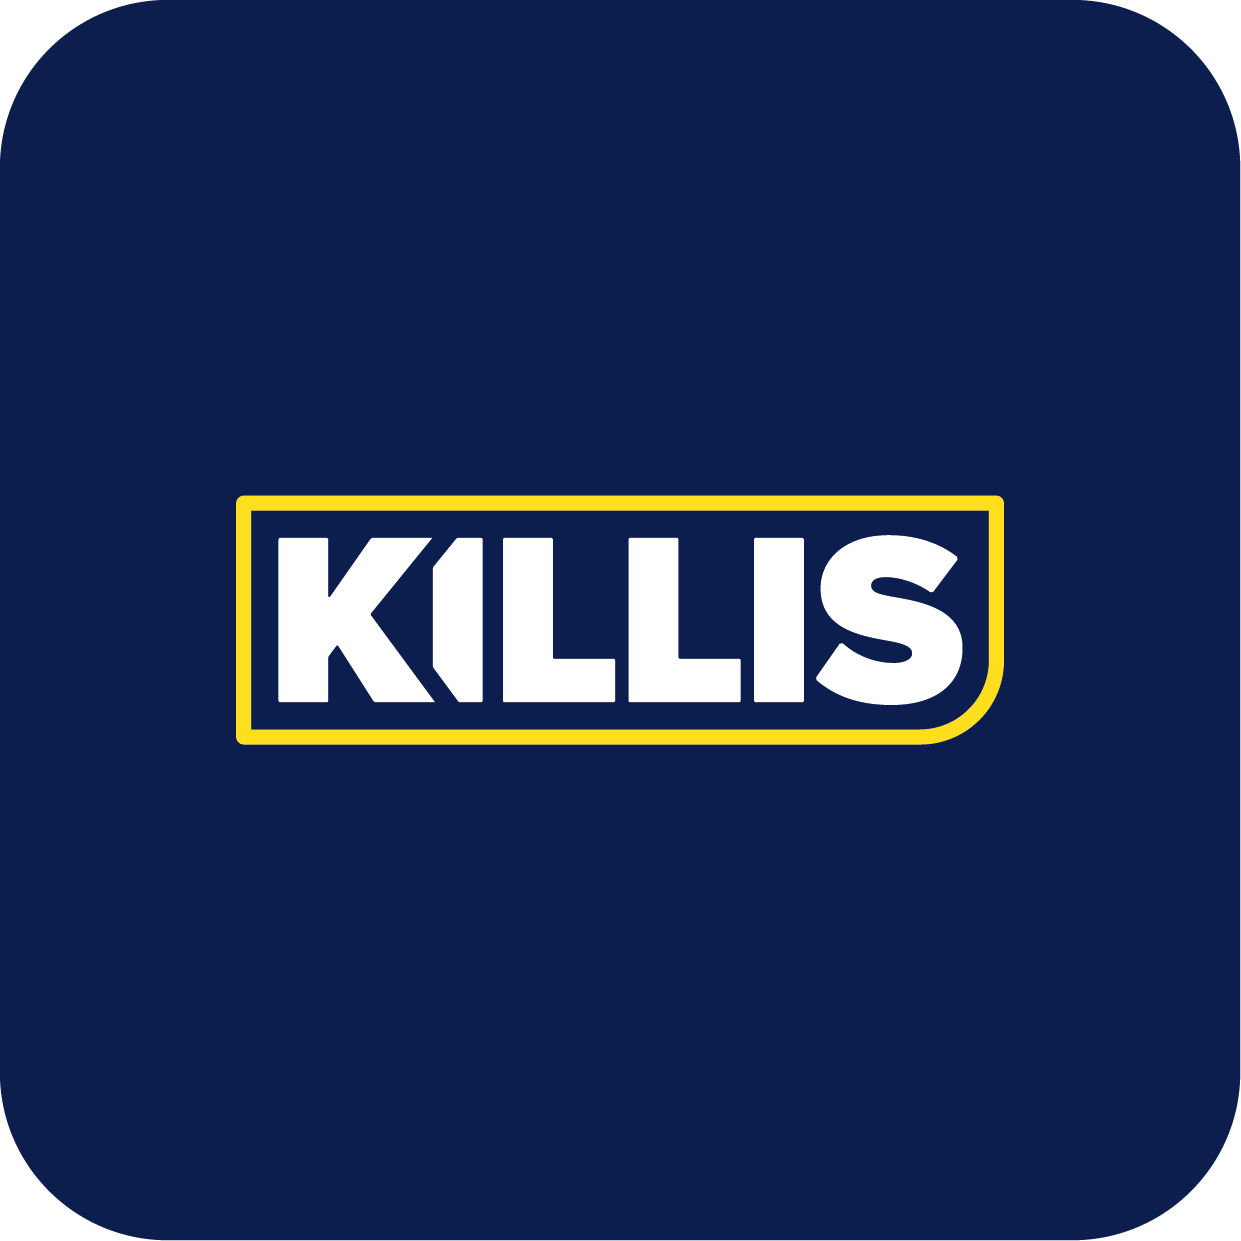 T L KILLIS